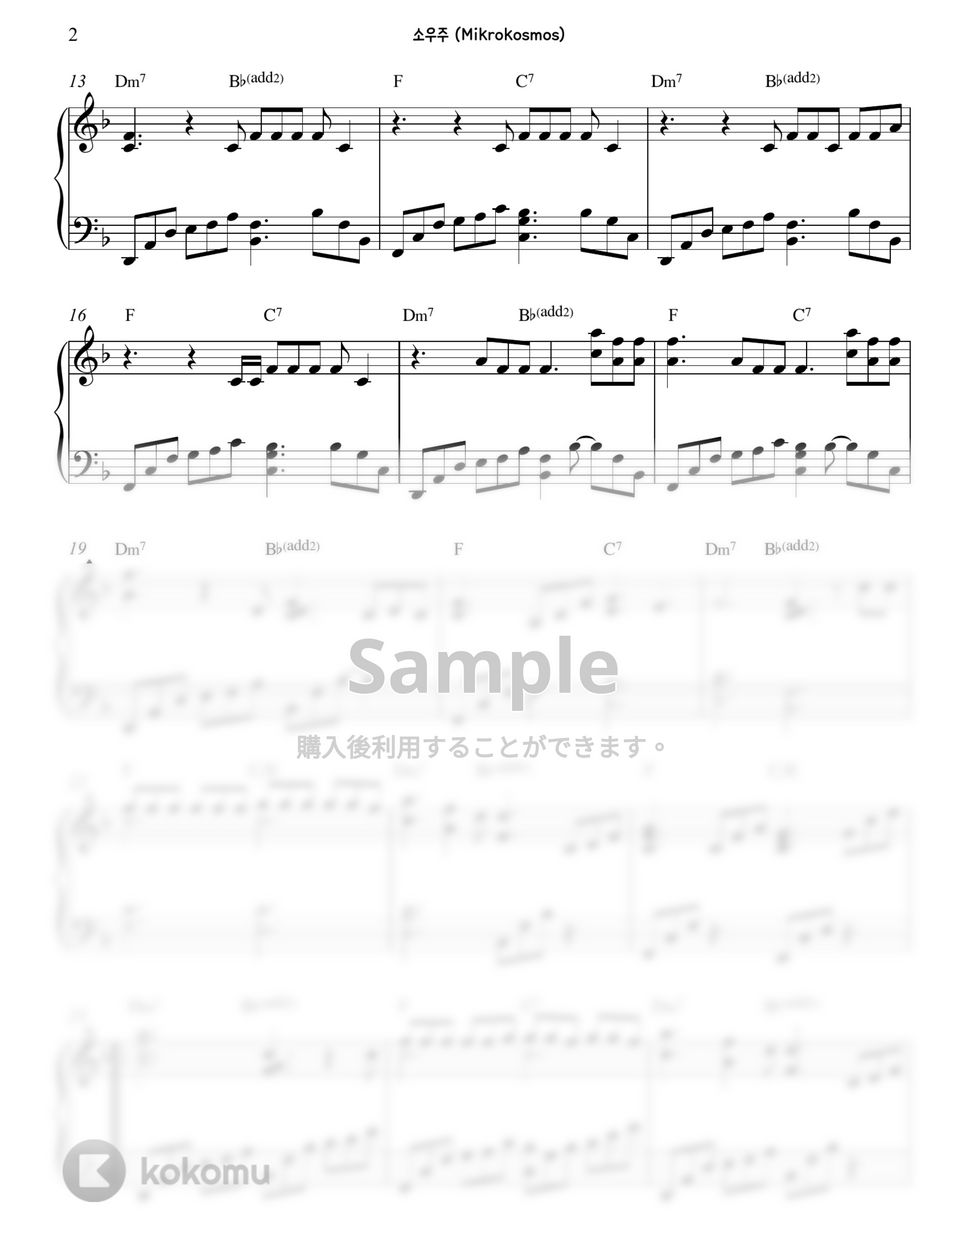 防弾少年団(BTS) - 小宇宙(Mikrokosmos) (Transpose key) by Gloria L.